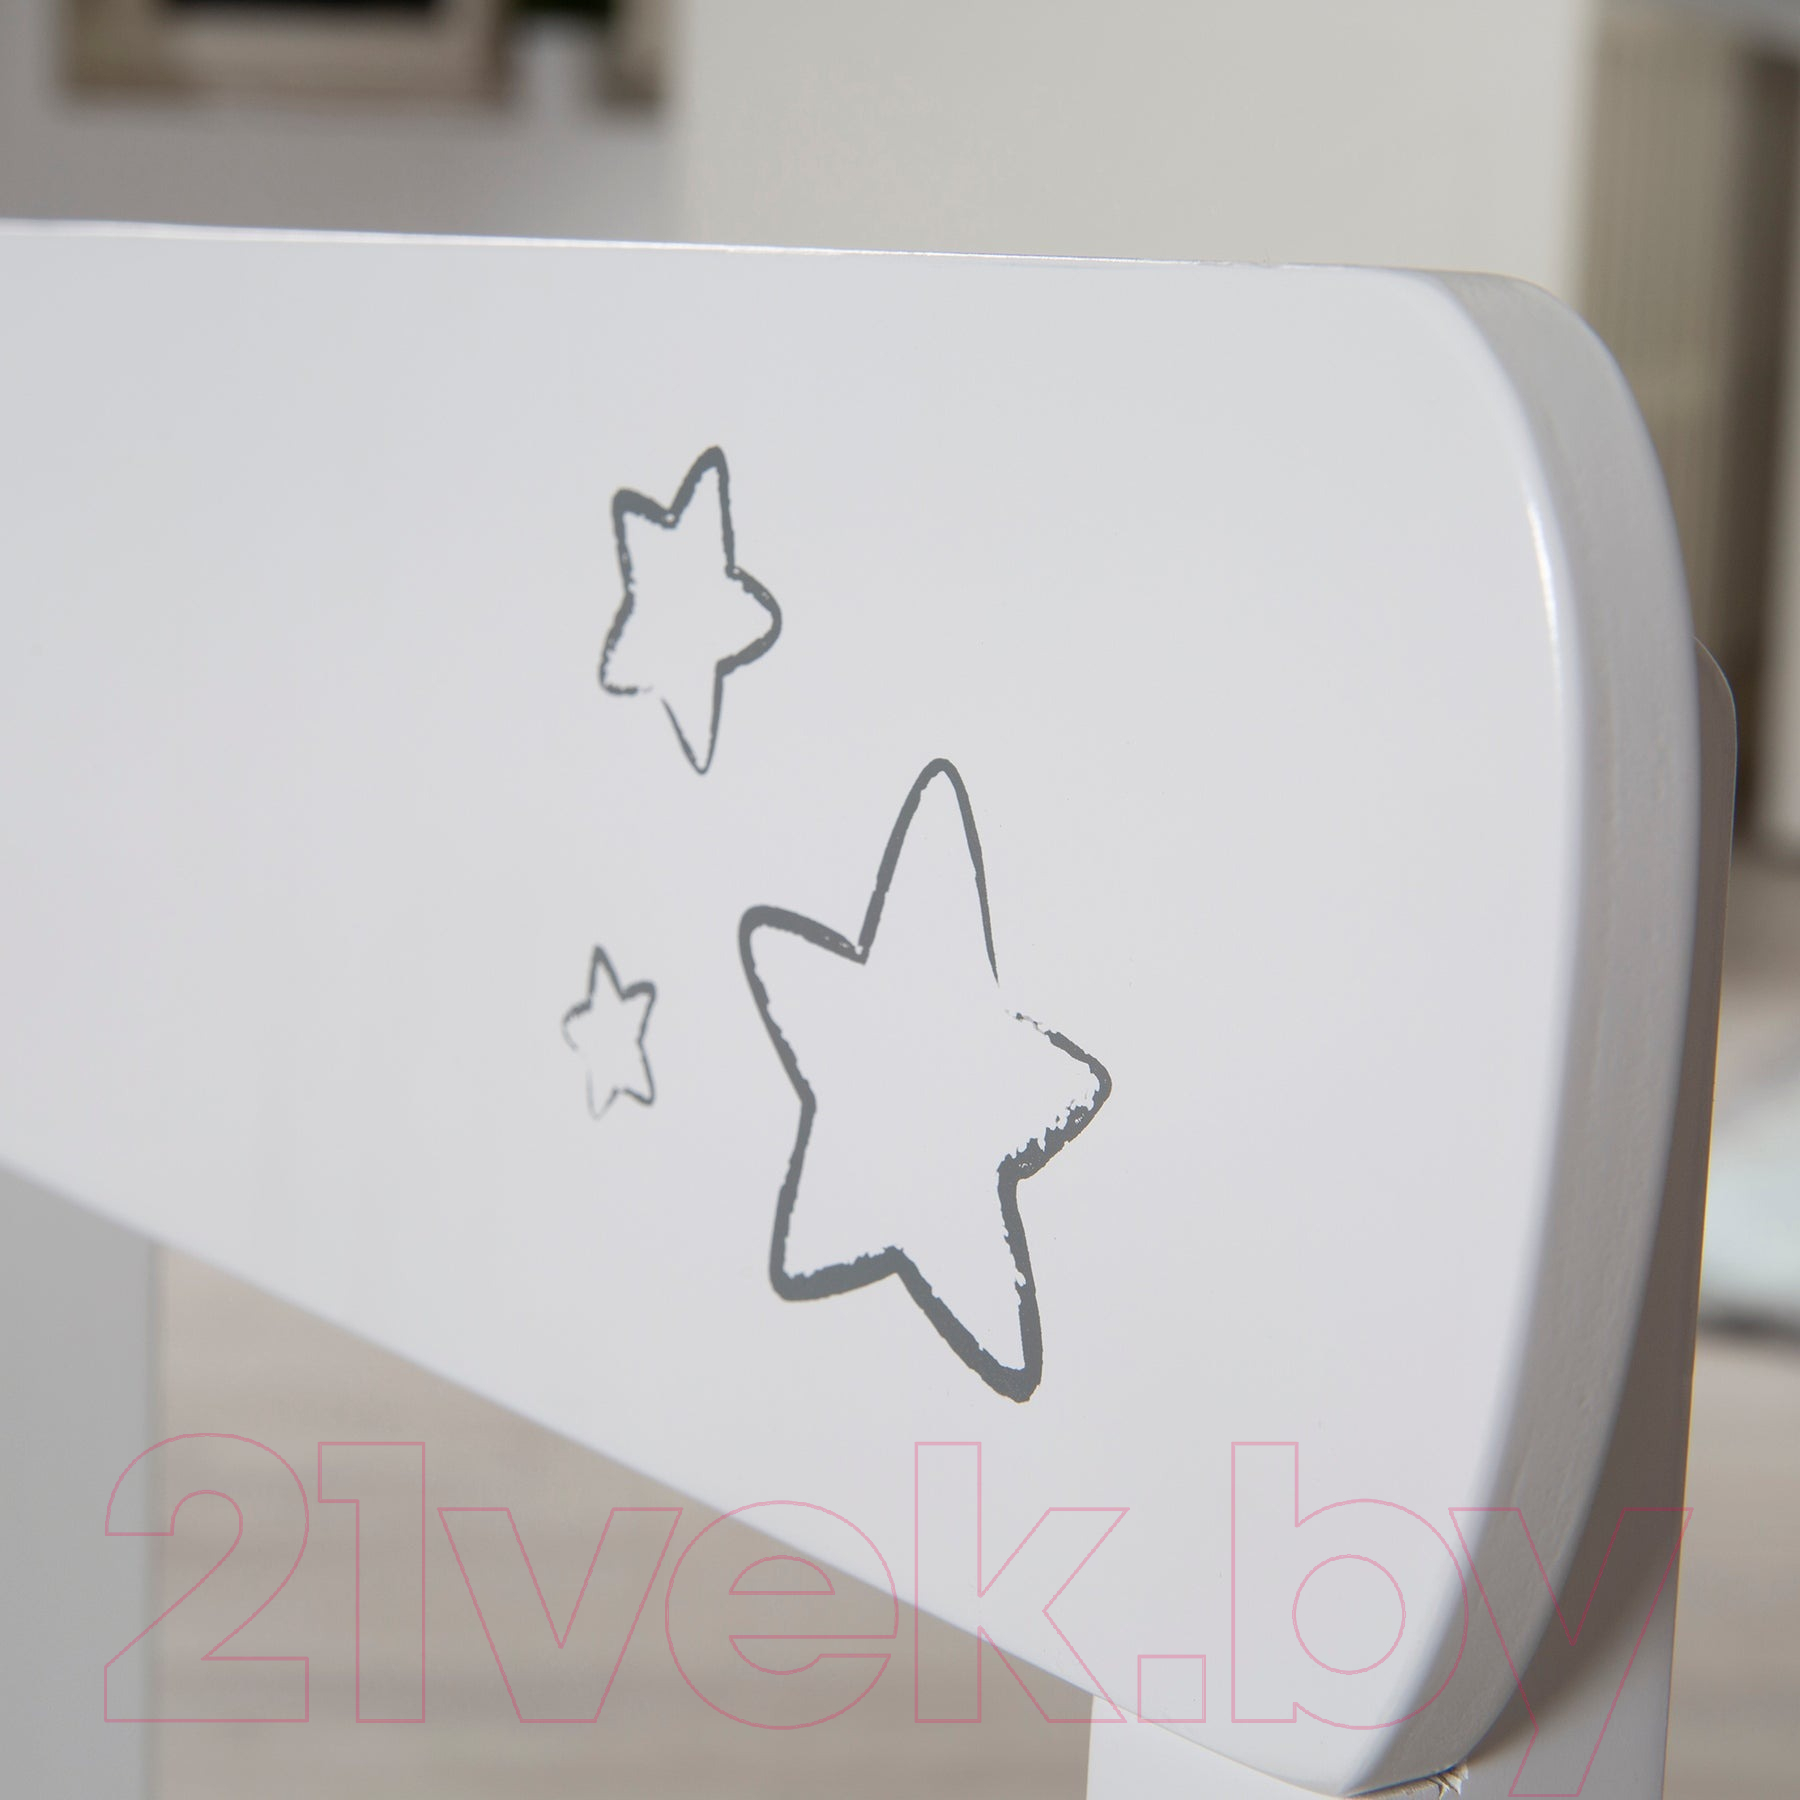 Комплект мебели с детским столом Roba Little Stars / 450017D190